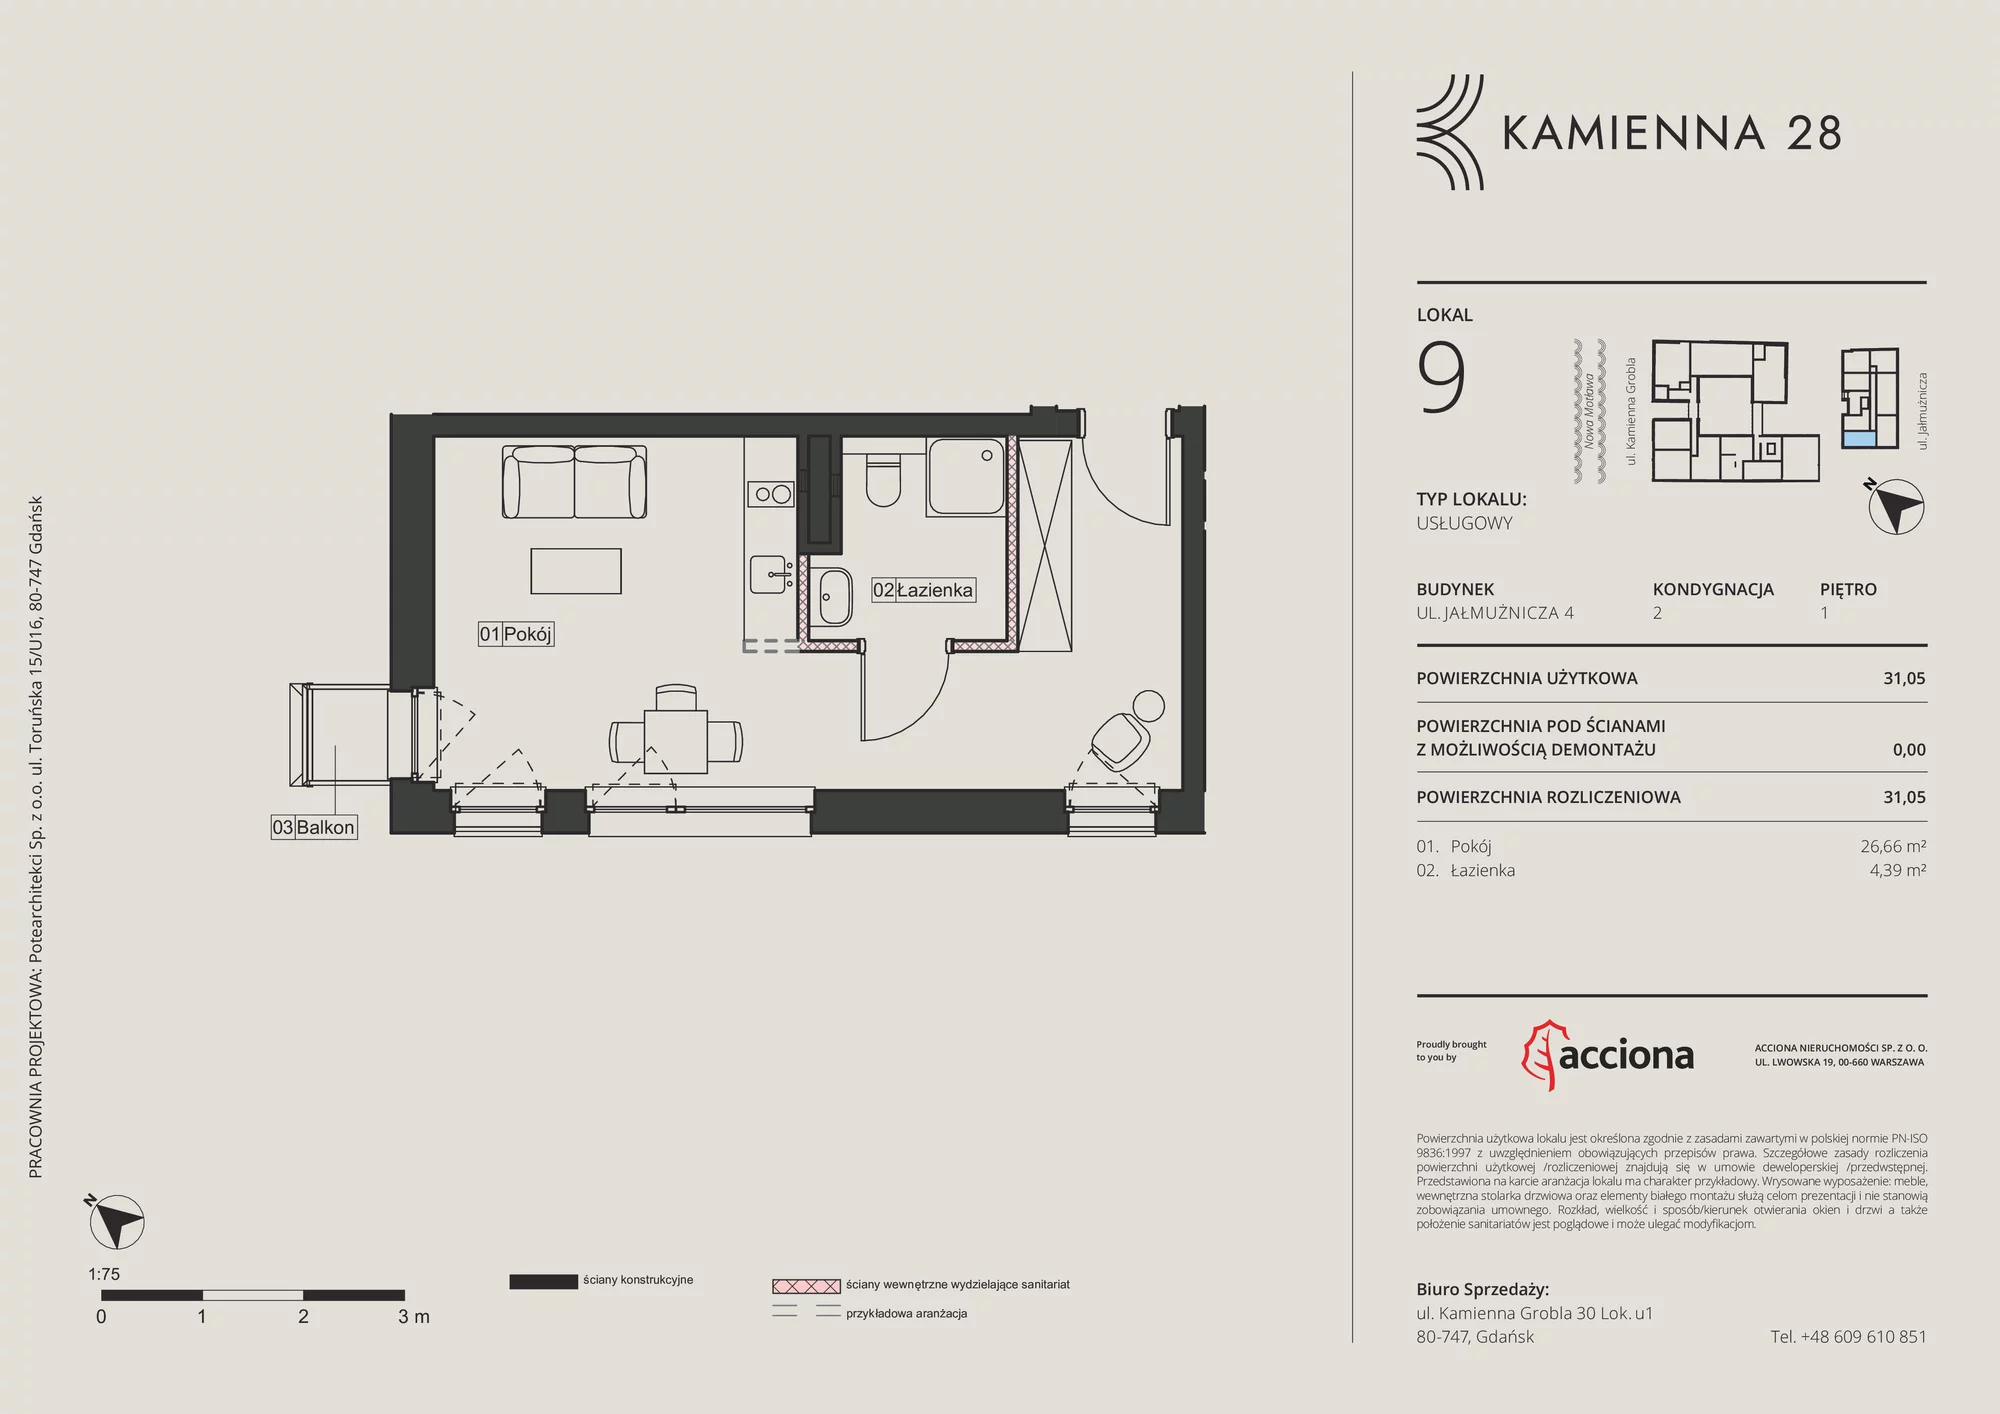 Apartament inwestycyjny 31,05 m², piętro 1, oferta nr 4.9, Kamienna 28 - apartamenty inwestycyjne, Gdańsk, Śródmieście, Dolne Miasto, ul. Jałmużnicza 4